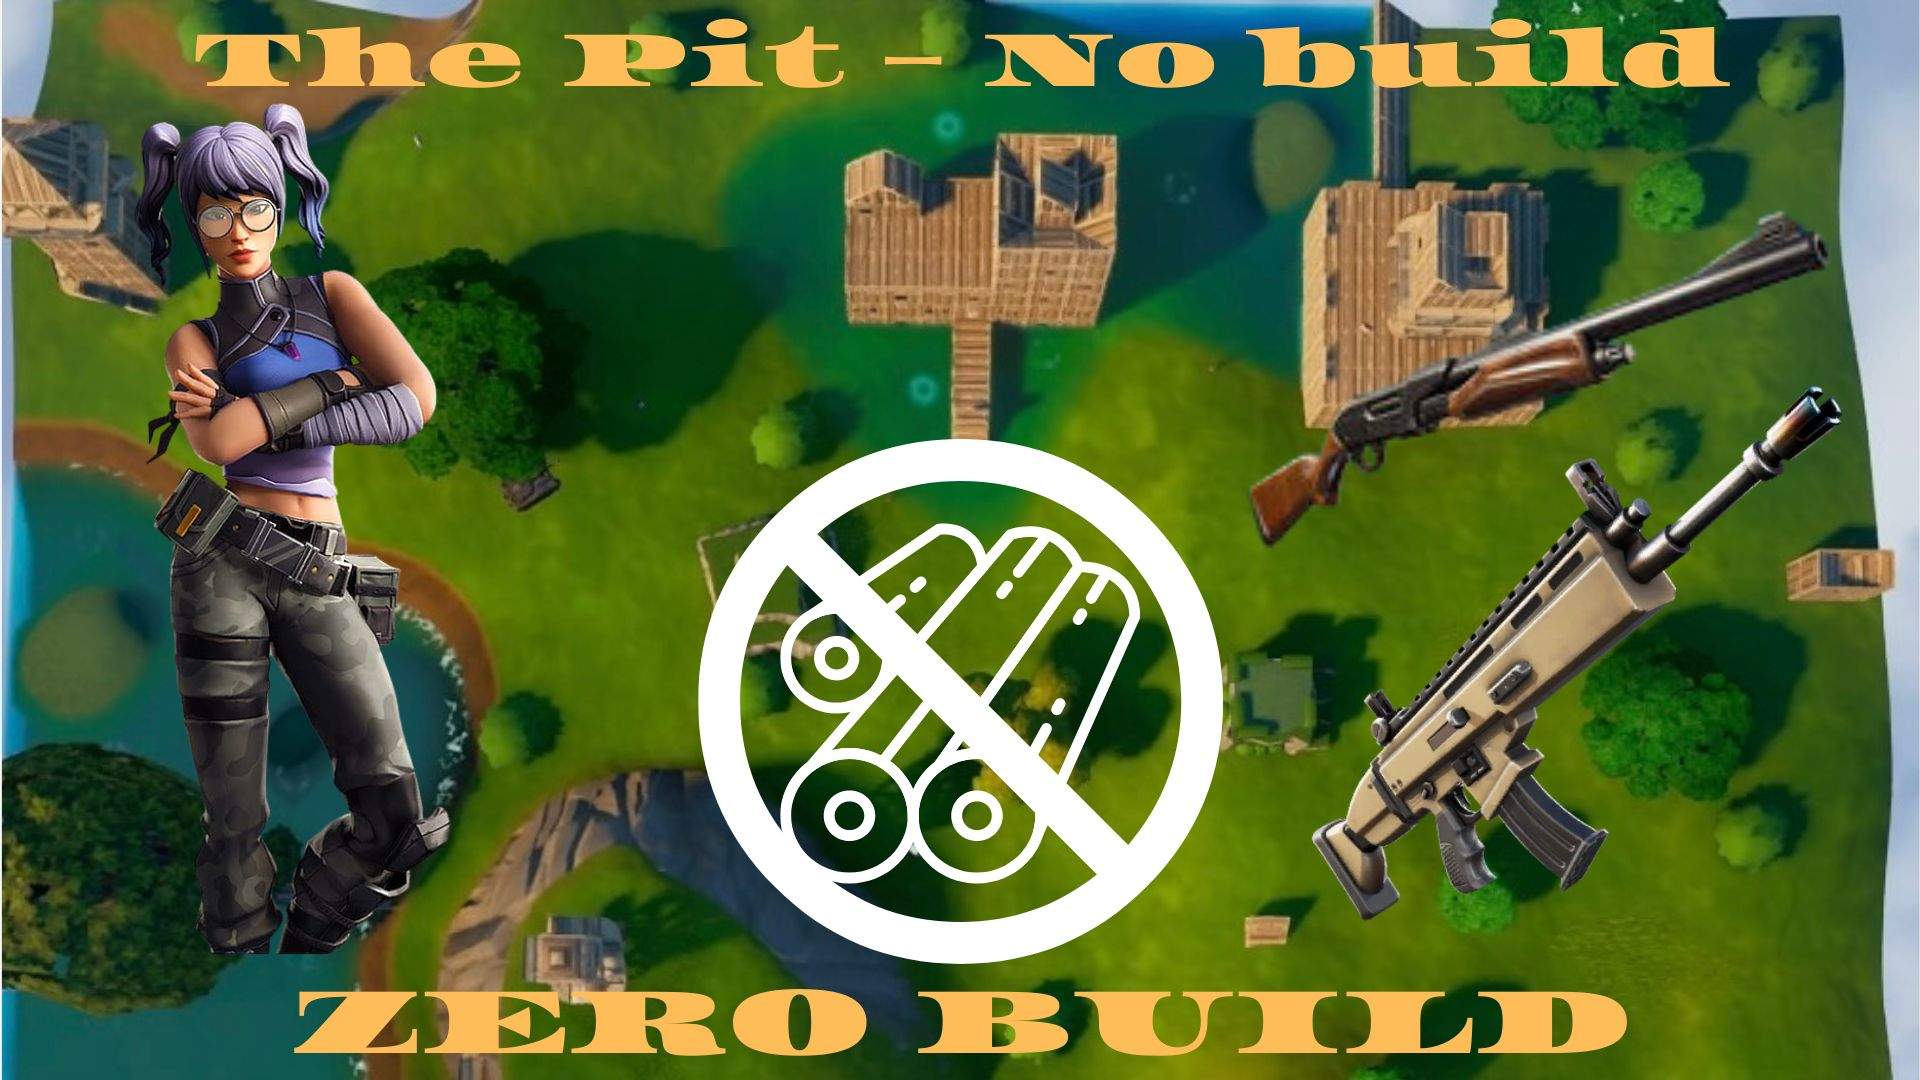 The Pit - No Build